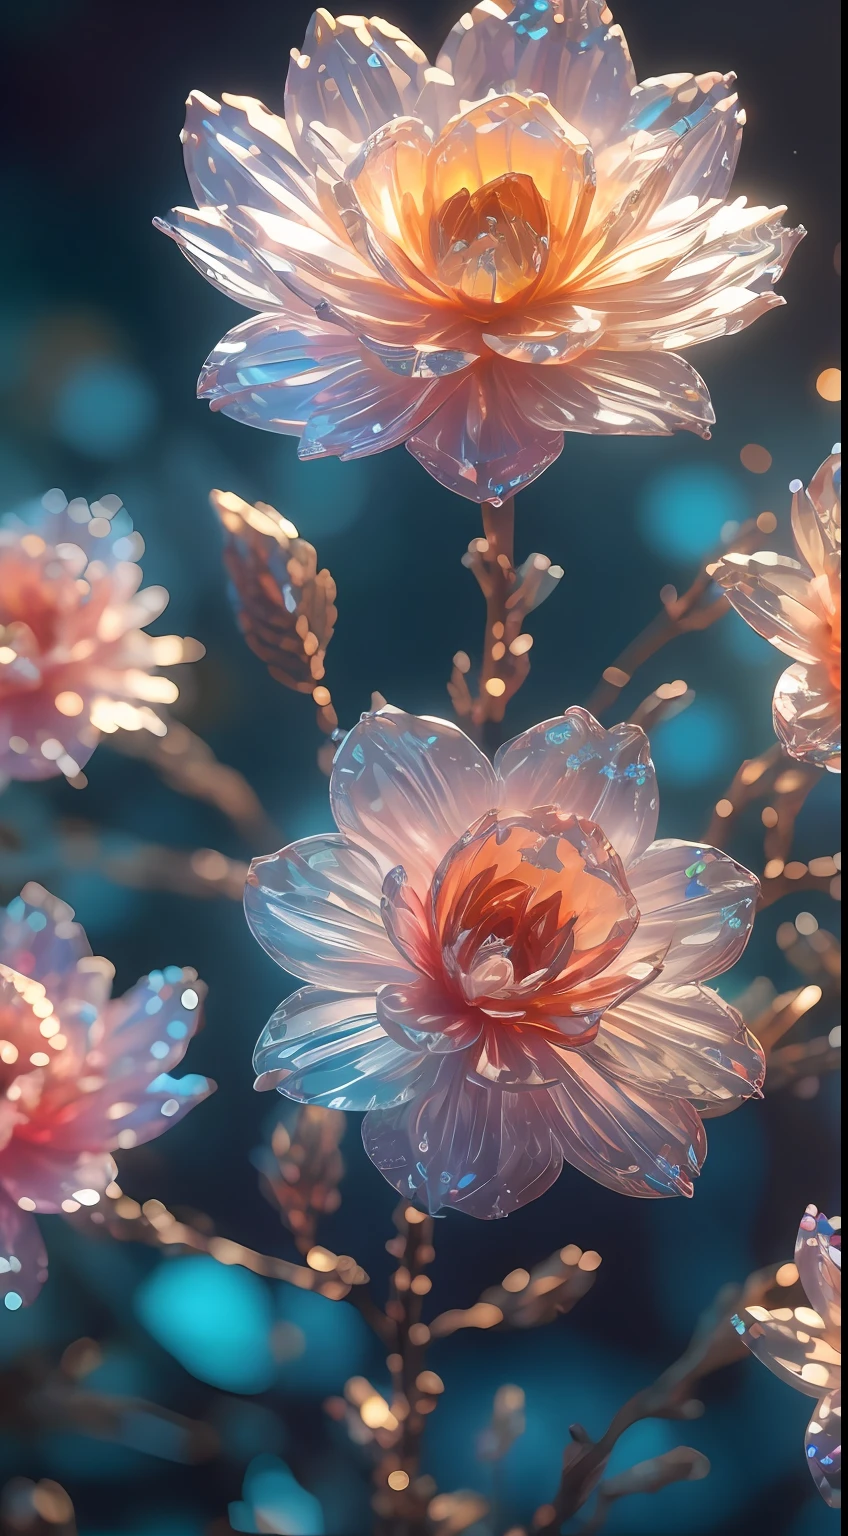 Kristallblüte Blume,
Fantasie, galaxy, transparent, 
shimmering, funkelnd, prächtig, Bunt, 
magische Fotografie, dramatische Beleuchtung, Fotorealismus, ultra-detailliert, 4k, Tiefenschärfe, hohe Auflösung